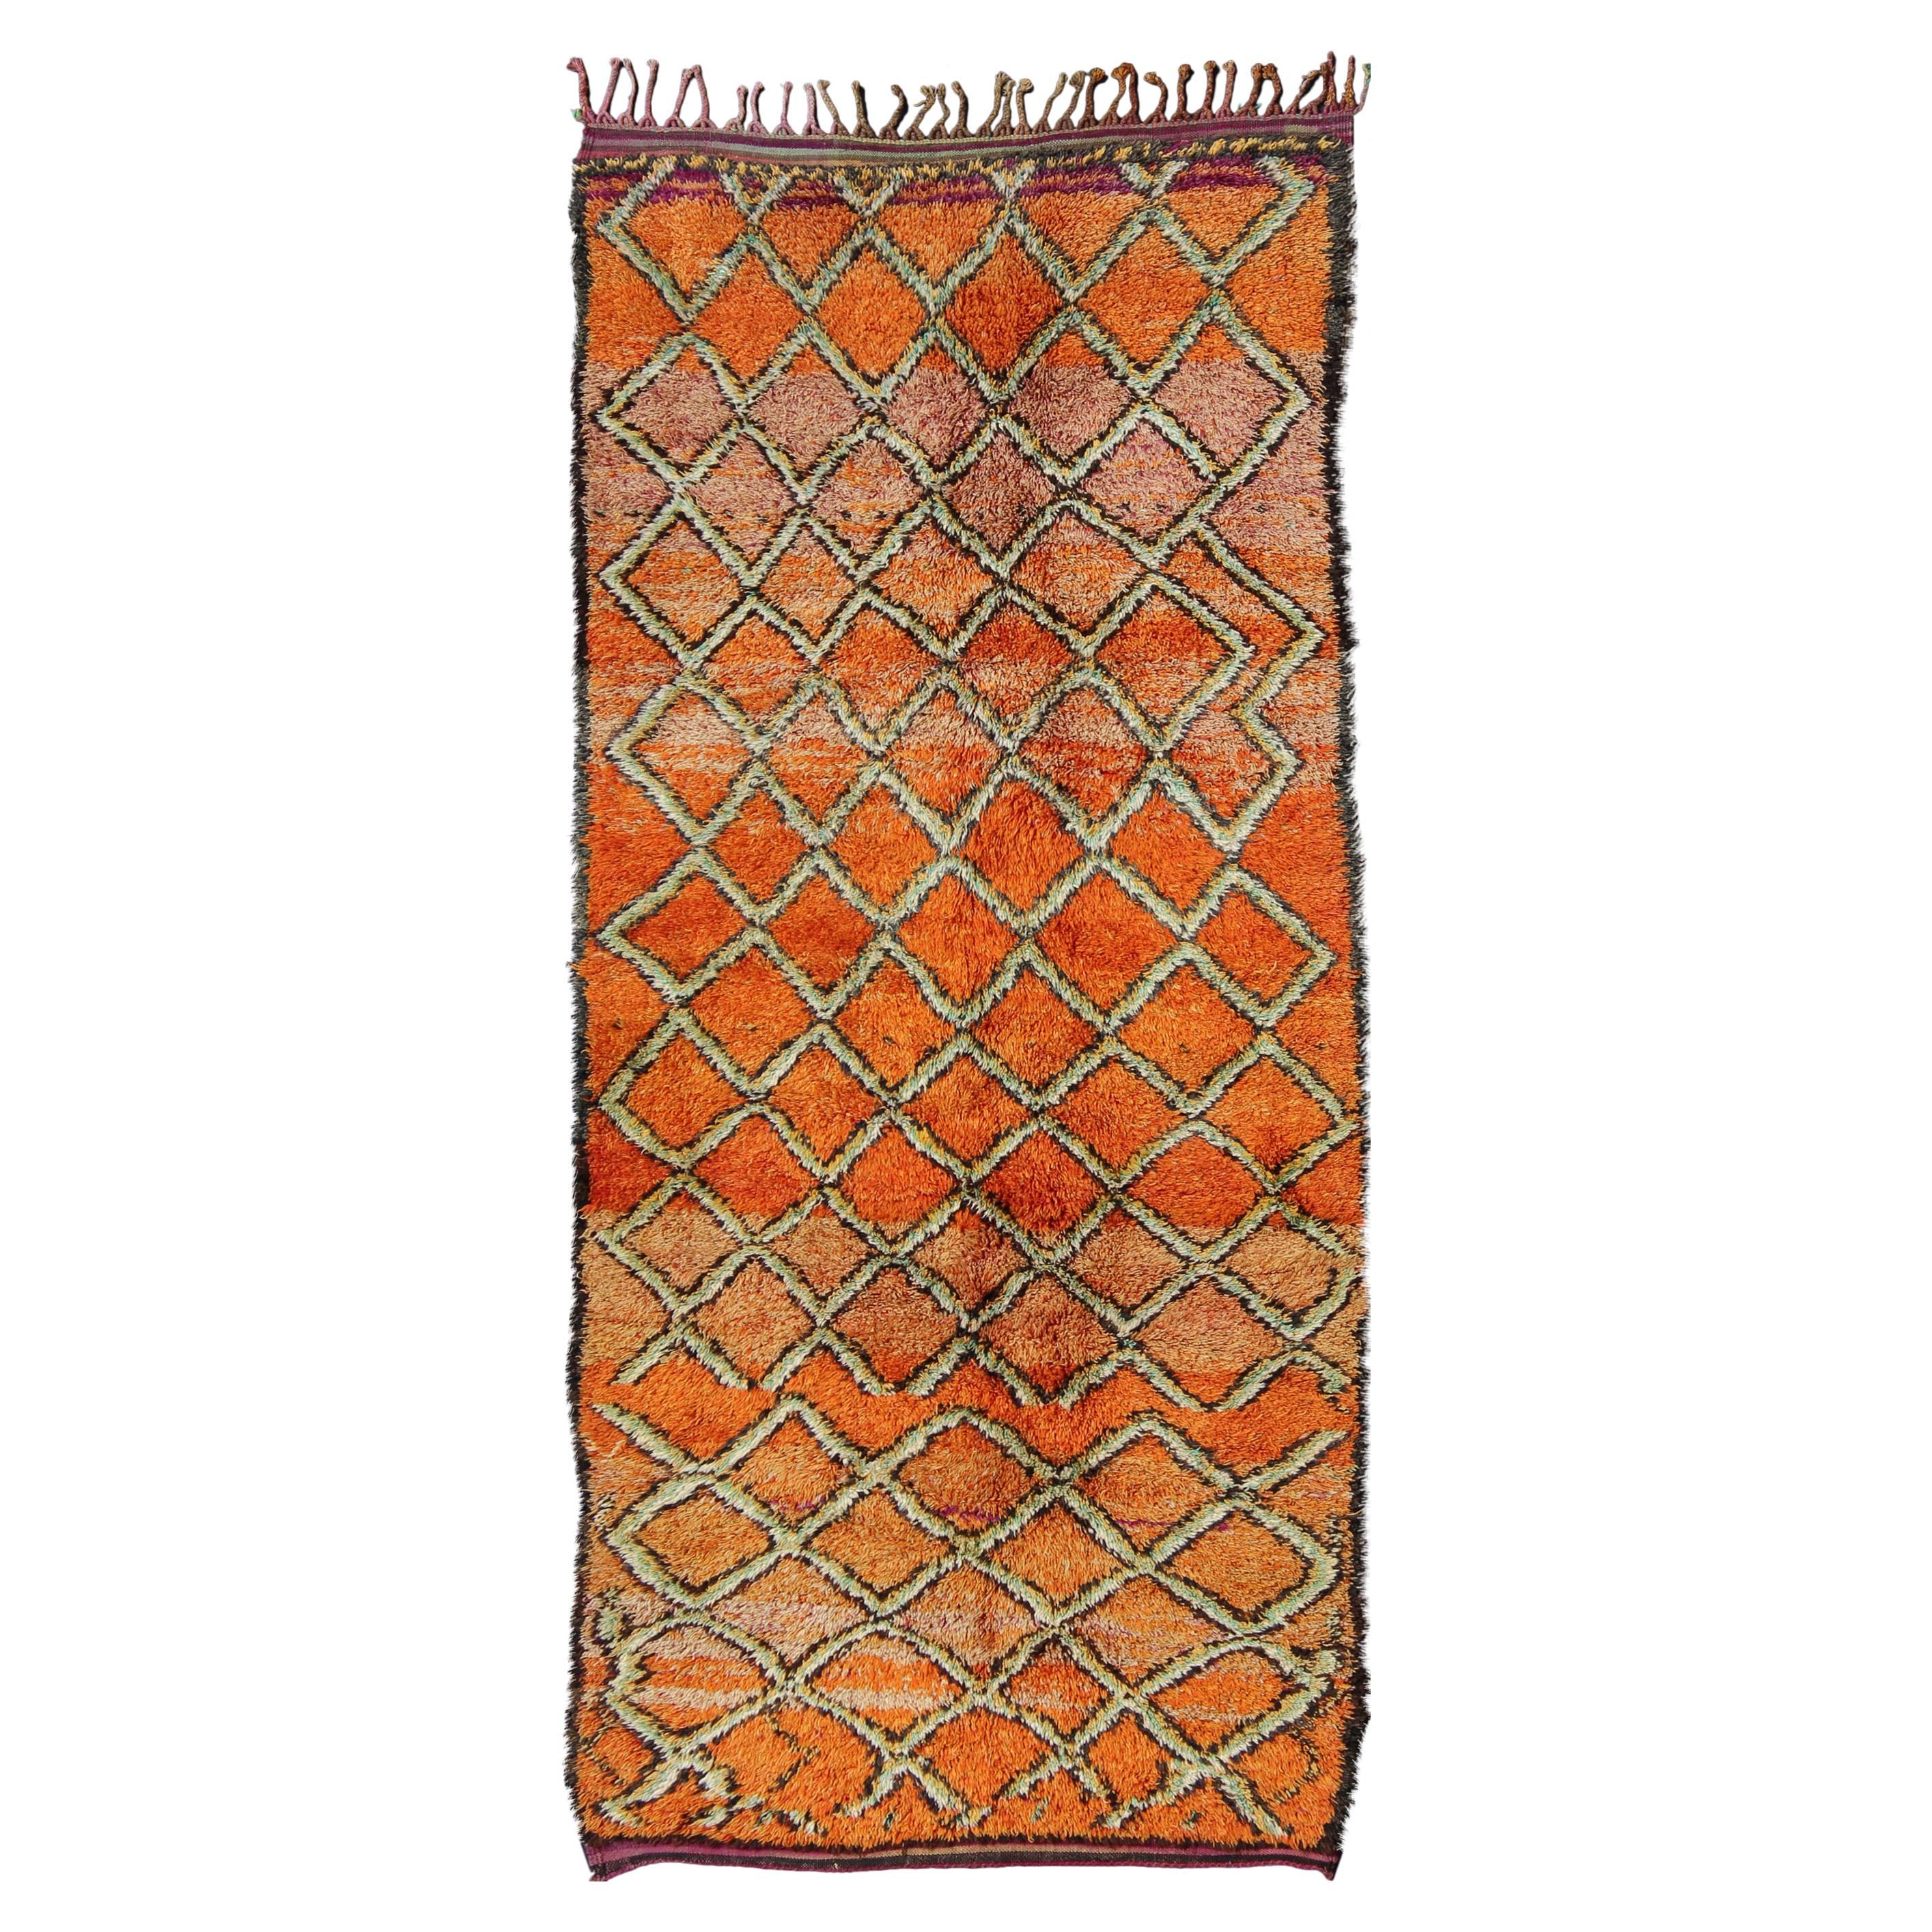 Breiter marokkanischer Vintage-Läufer, Galerieteppich mit Diamantmuster in Orange und Grün